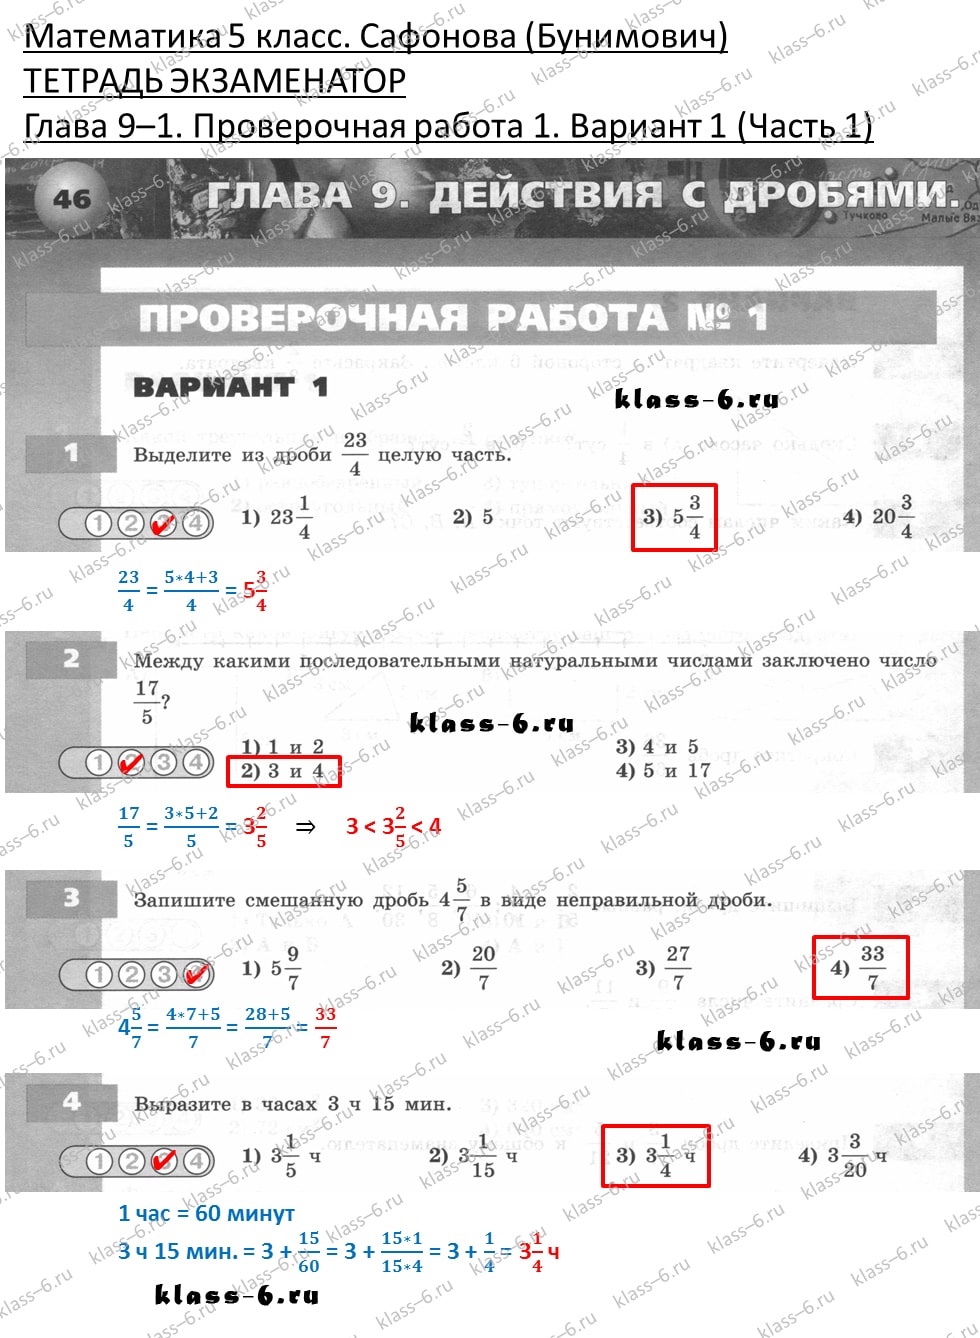 решебник и гдз по математике тетрадь экзаменатор Сафонова, Бунимович 5 класс глава 9 (1) контрольная работа 1 вариант 1 (1)